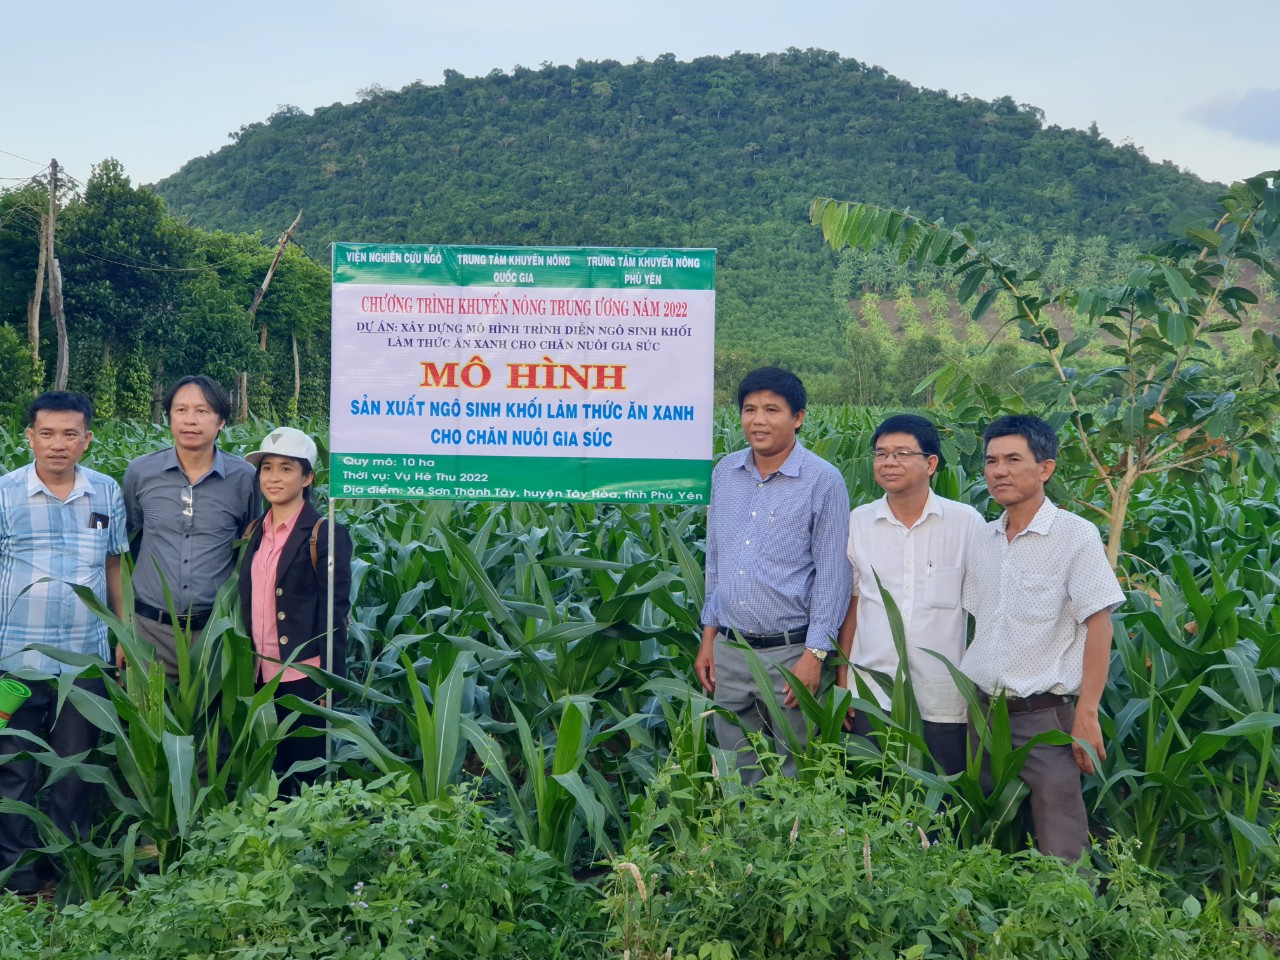 Phú Yên: Hiệu quả liên kết trồng ngô sinh khối ở xã Sơn Thành Tây